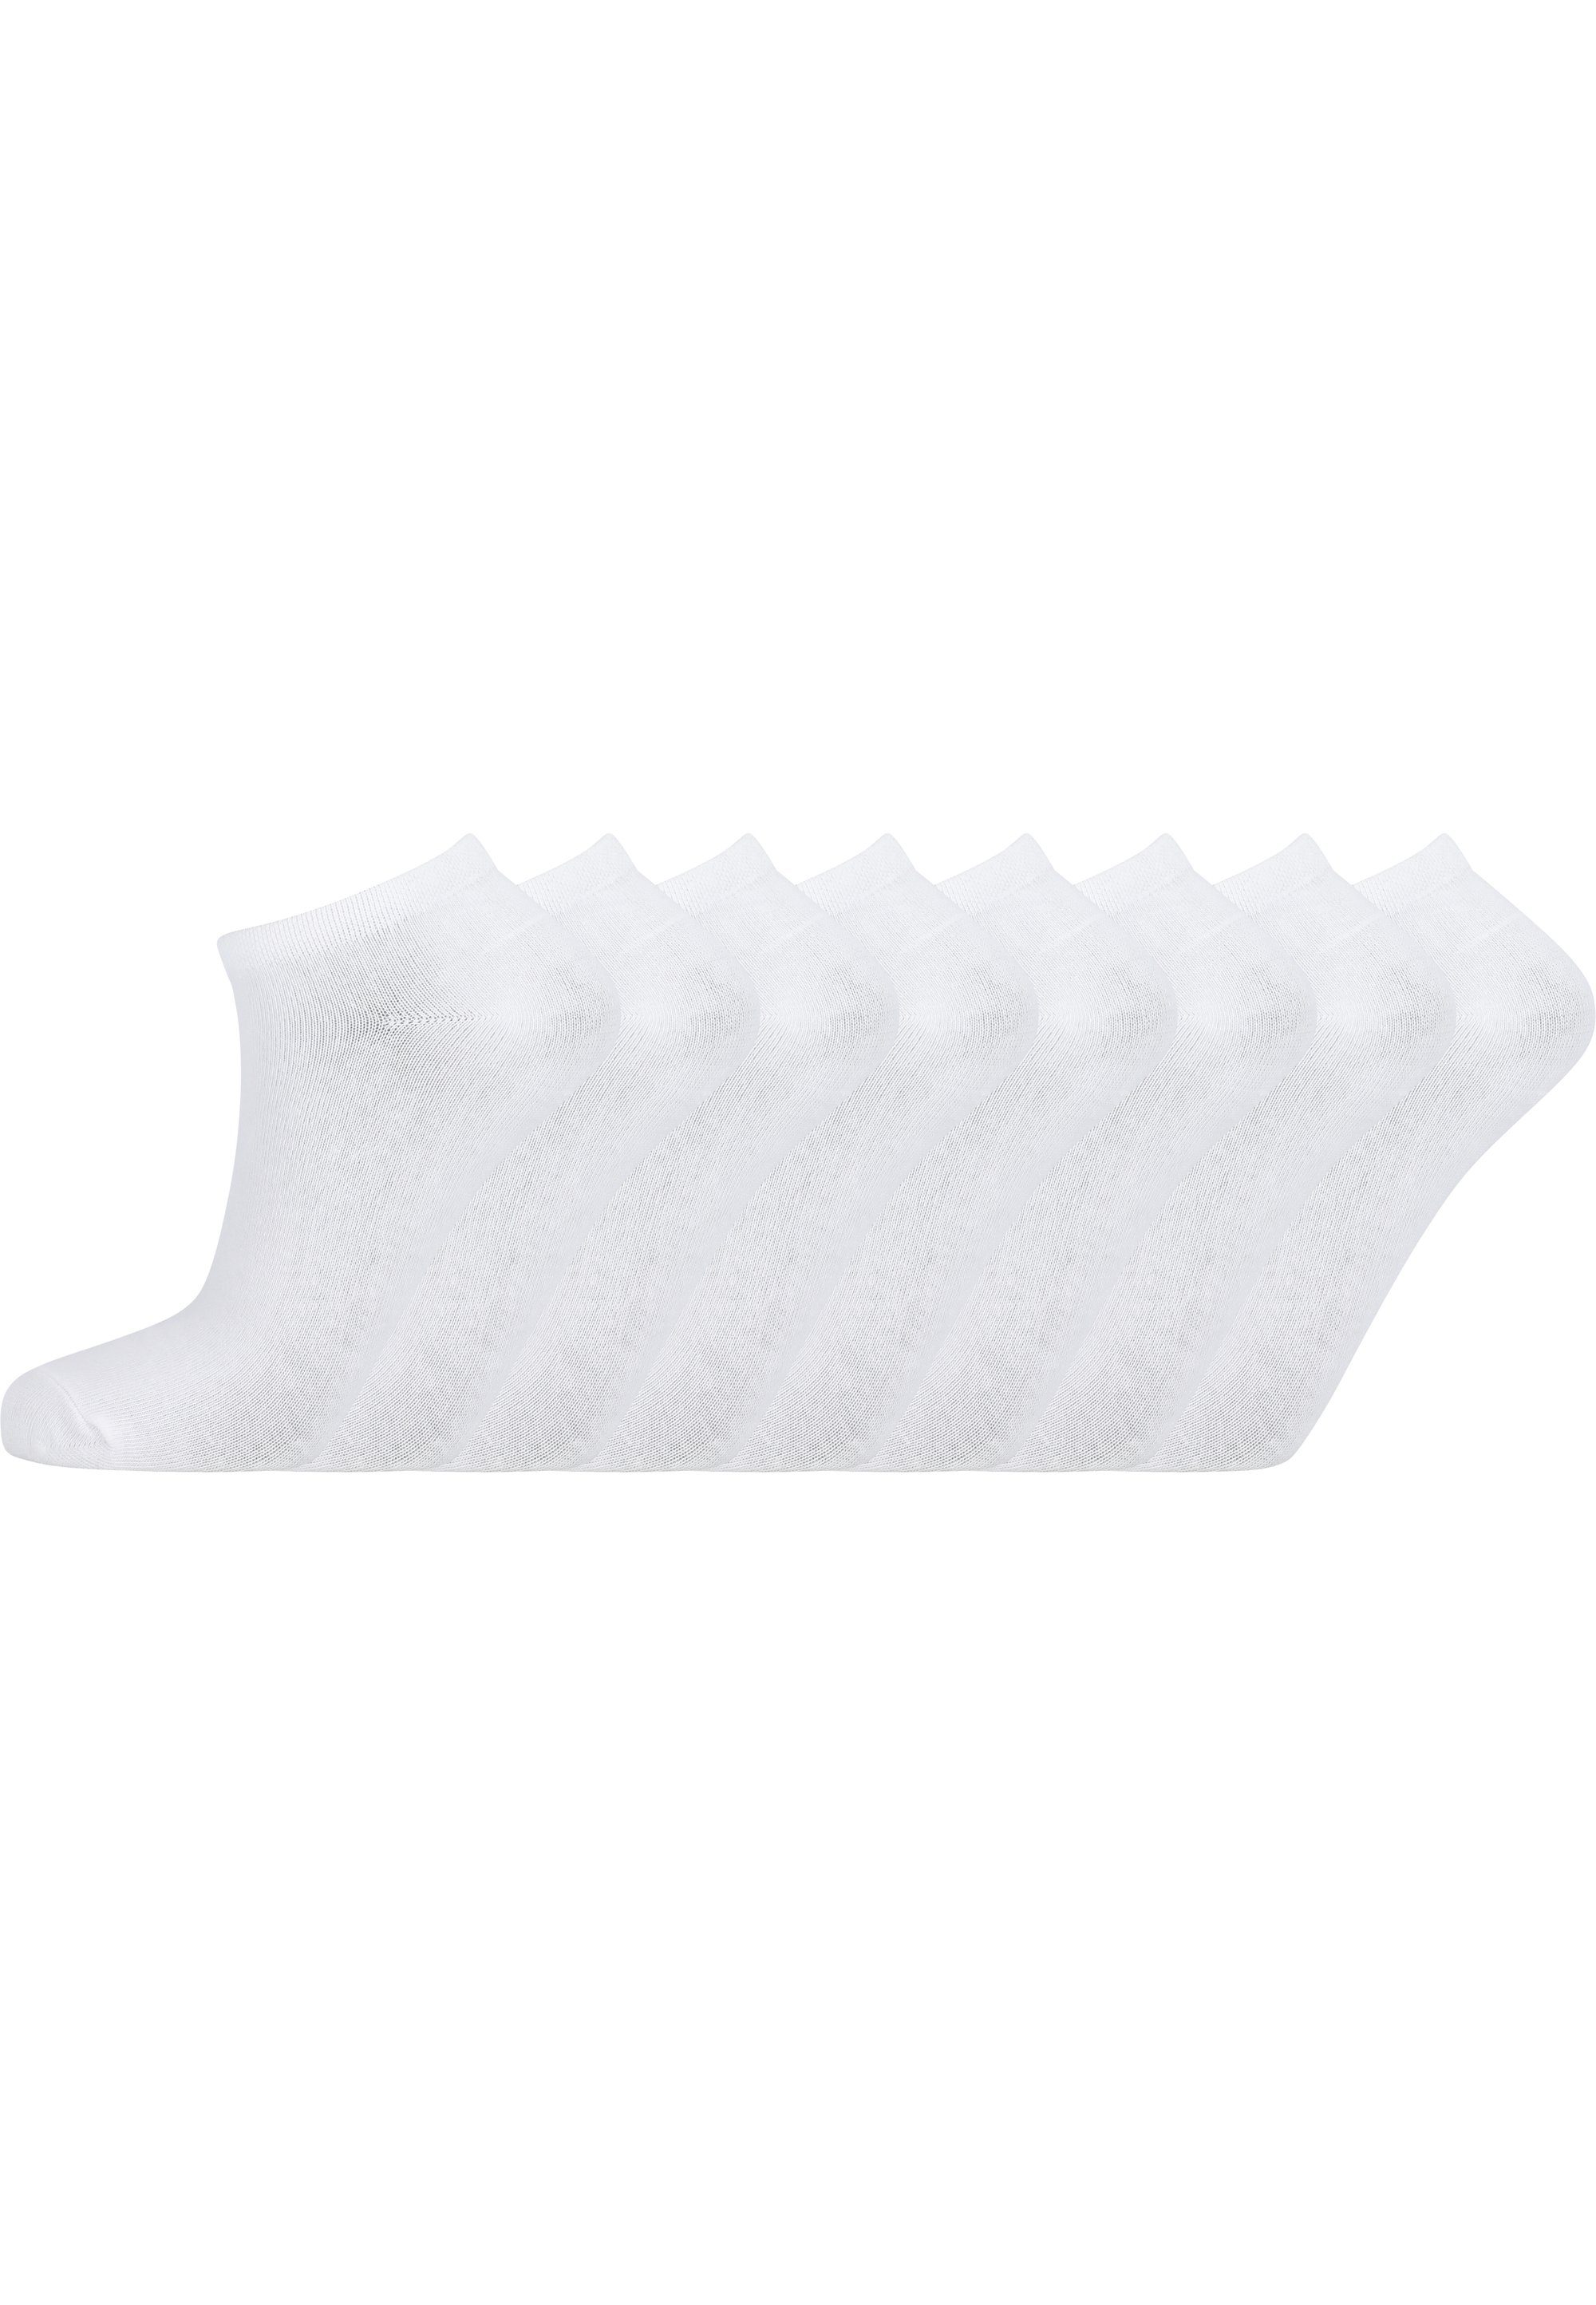 ENDURANCE Socken Mallorca (8-Paar) in atmungsaktiver Qualität weiß